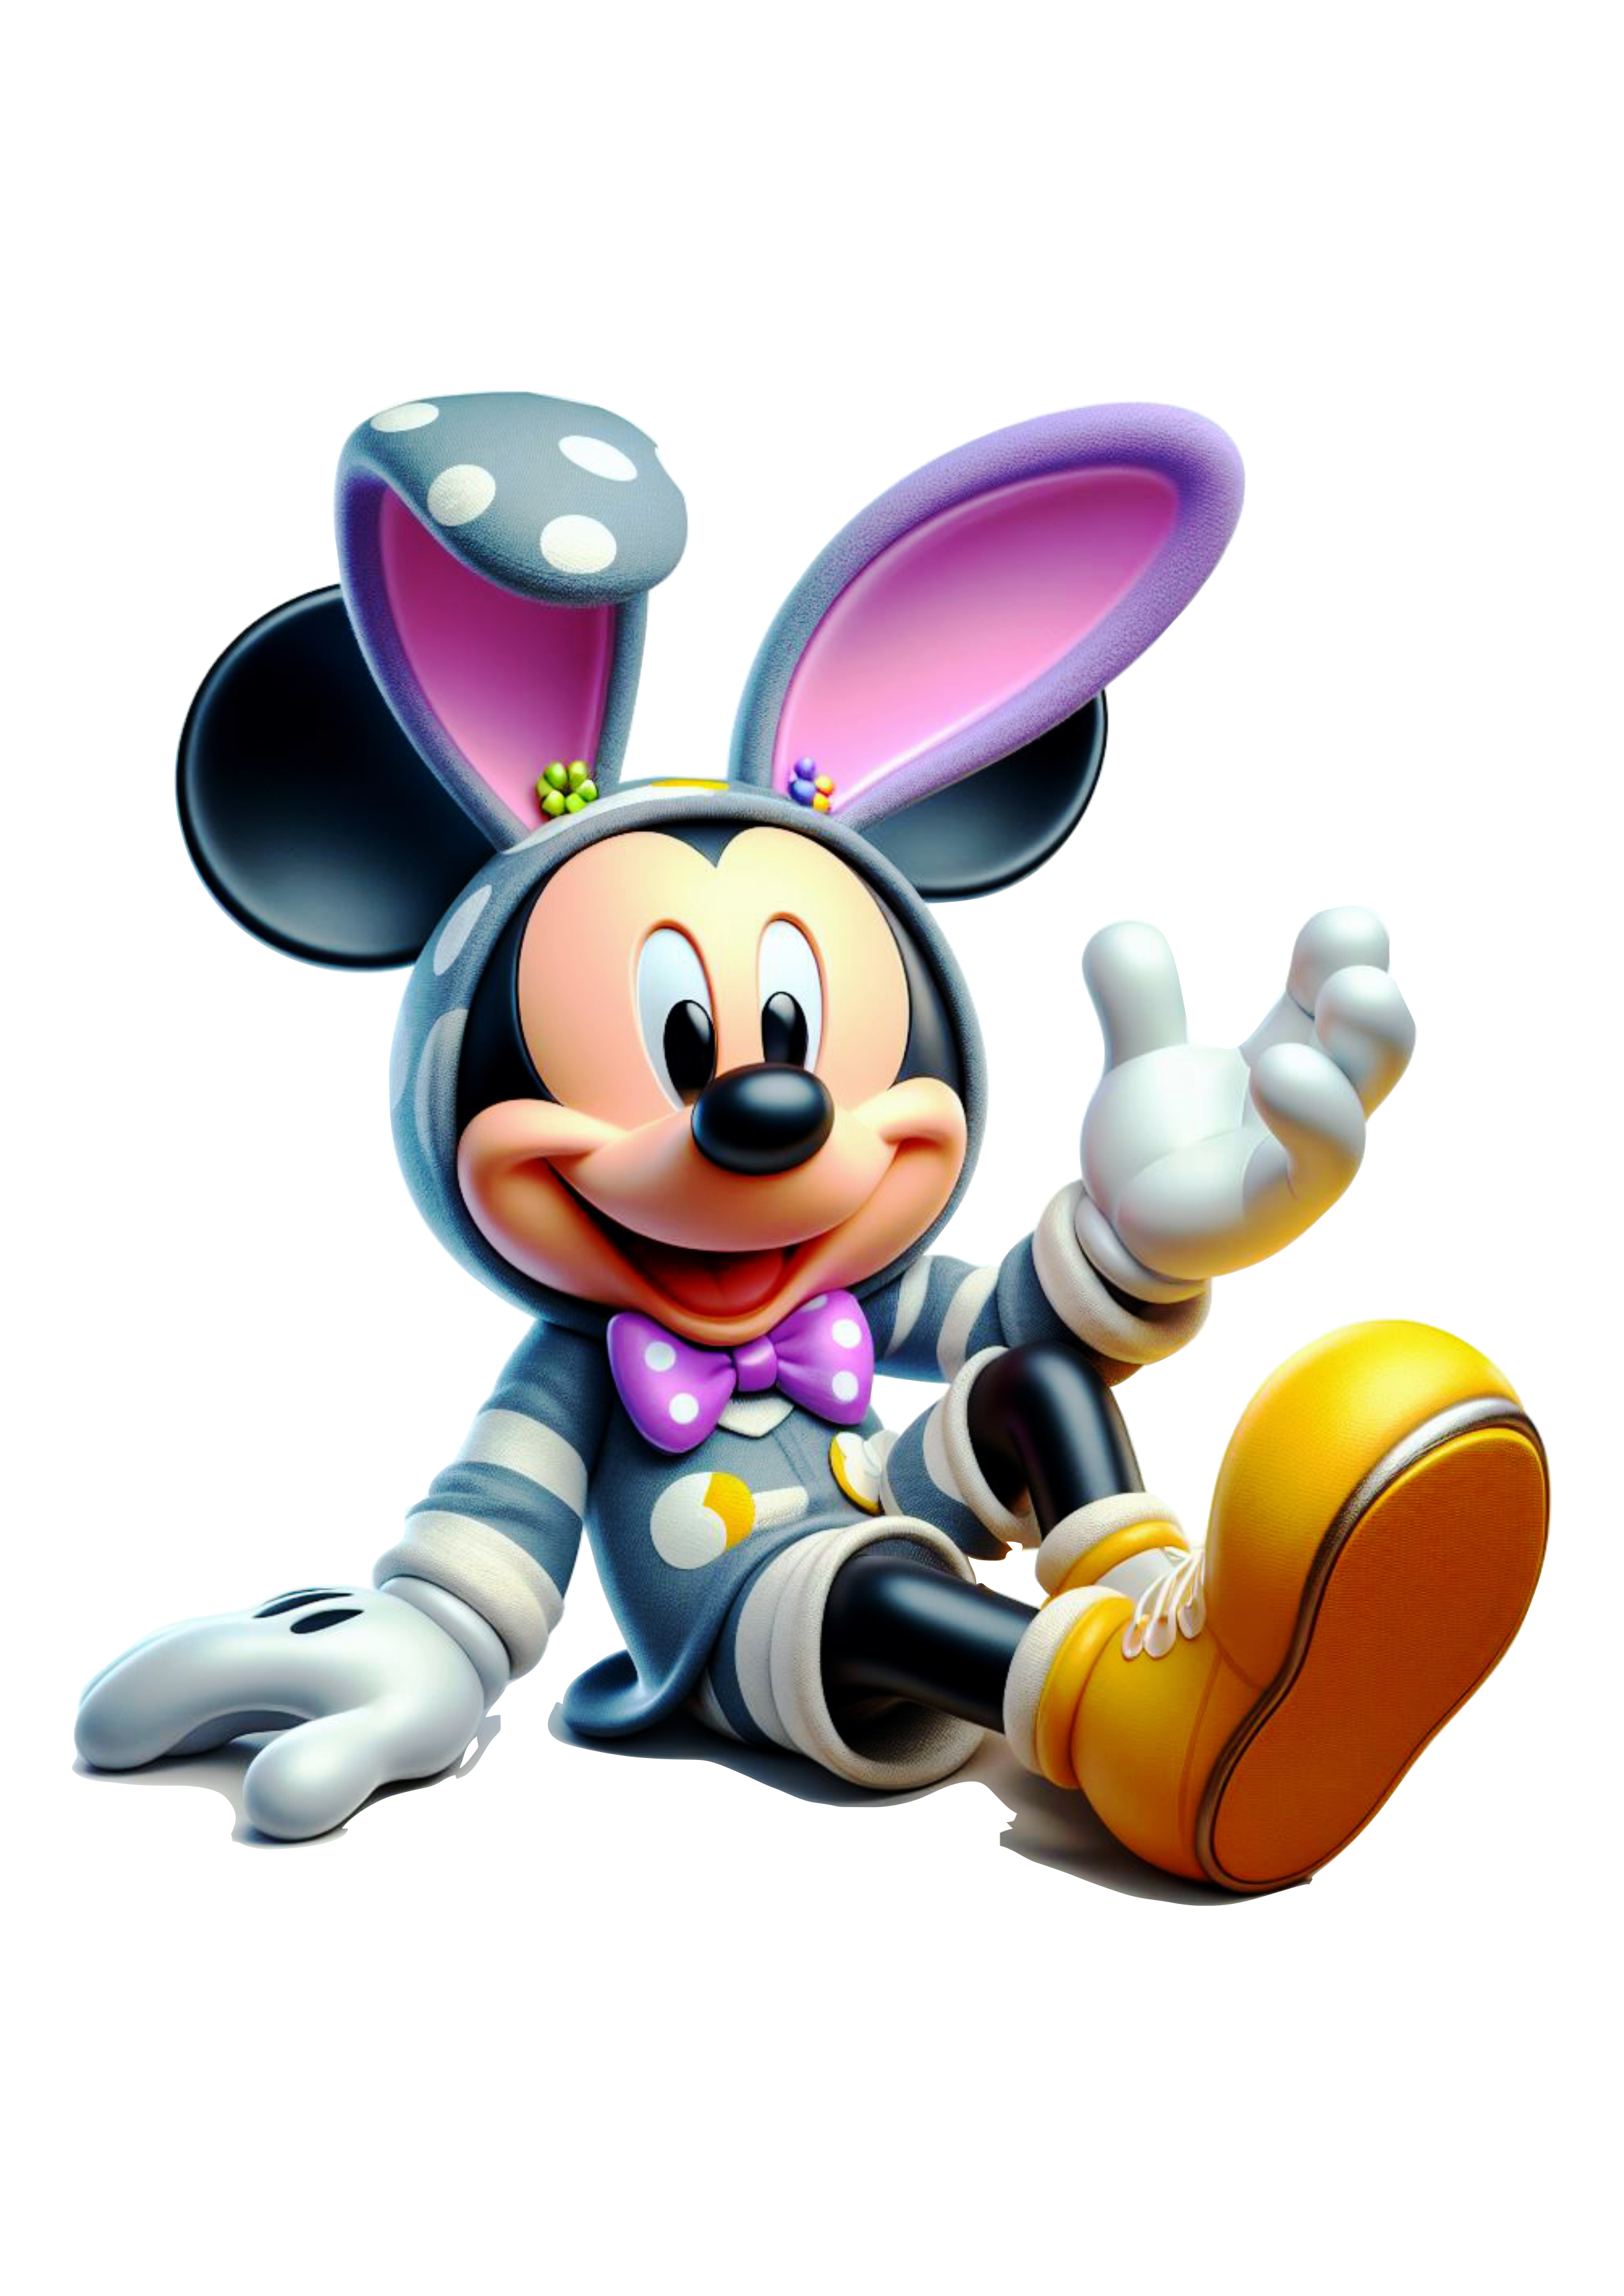 Imagens de páscoa decoração Mickey Mouse com orelhas de coelhinho desenho infantil clipart png vetor Disney